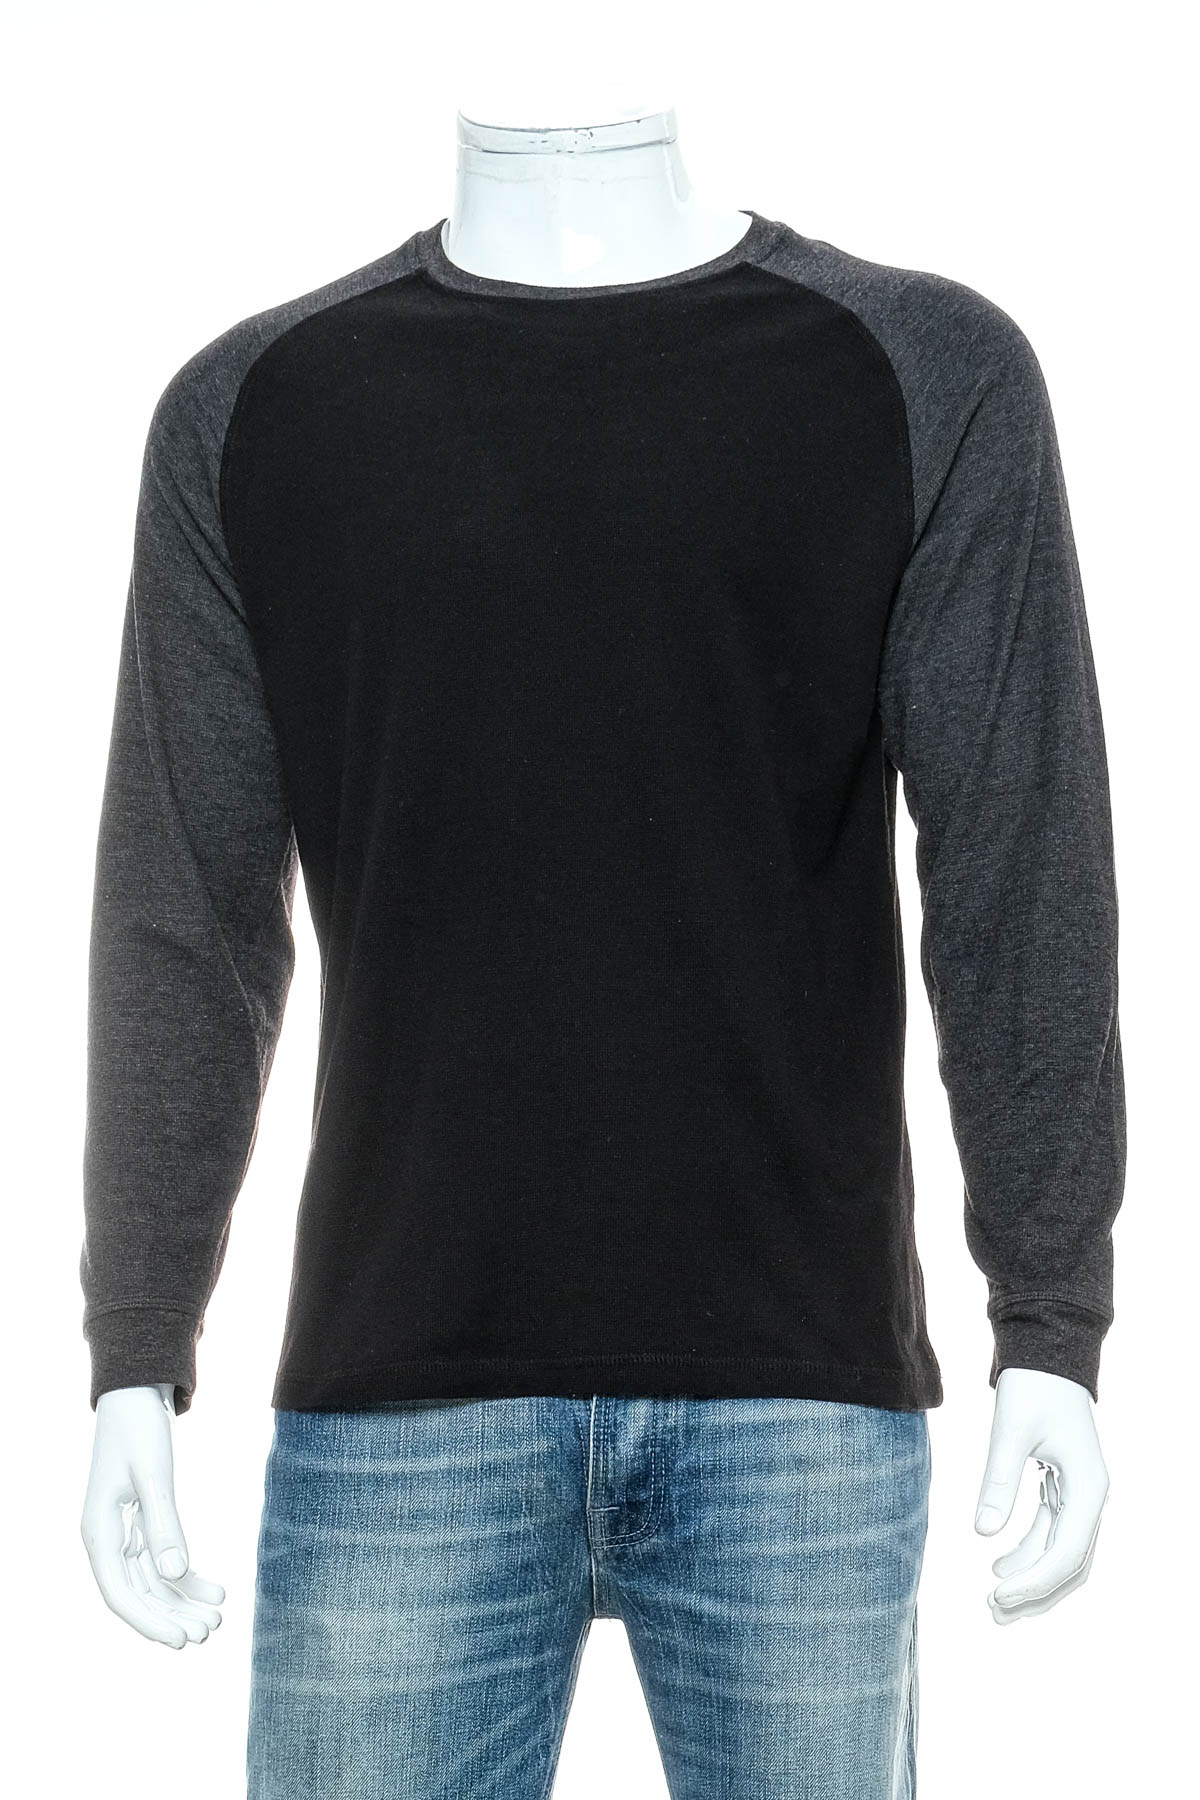 Men's sweater - Pierre Cardin - 0